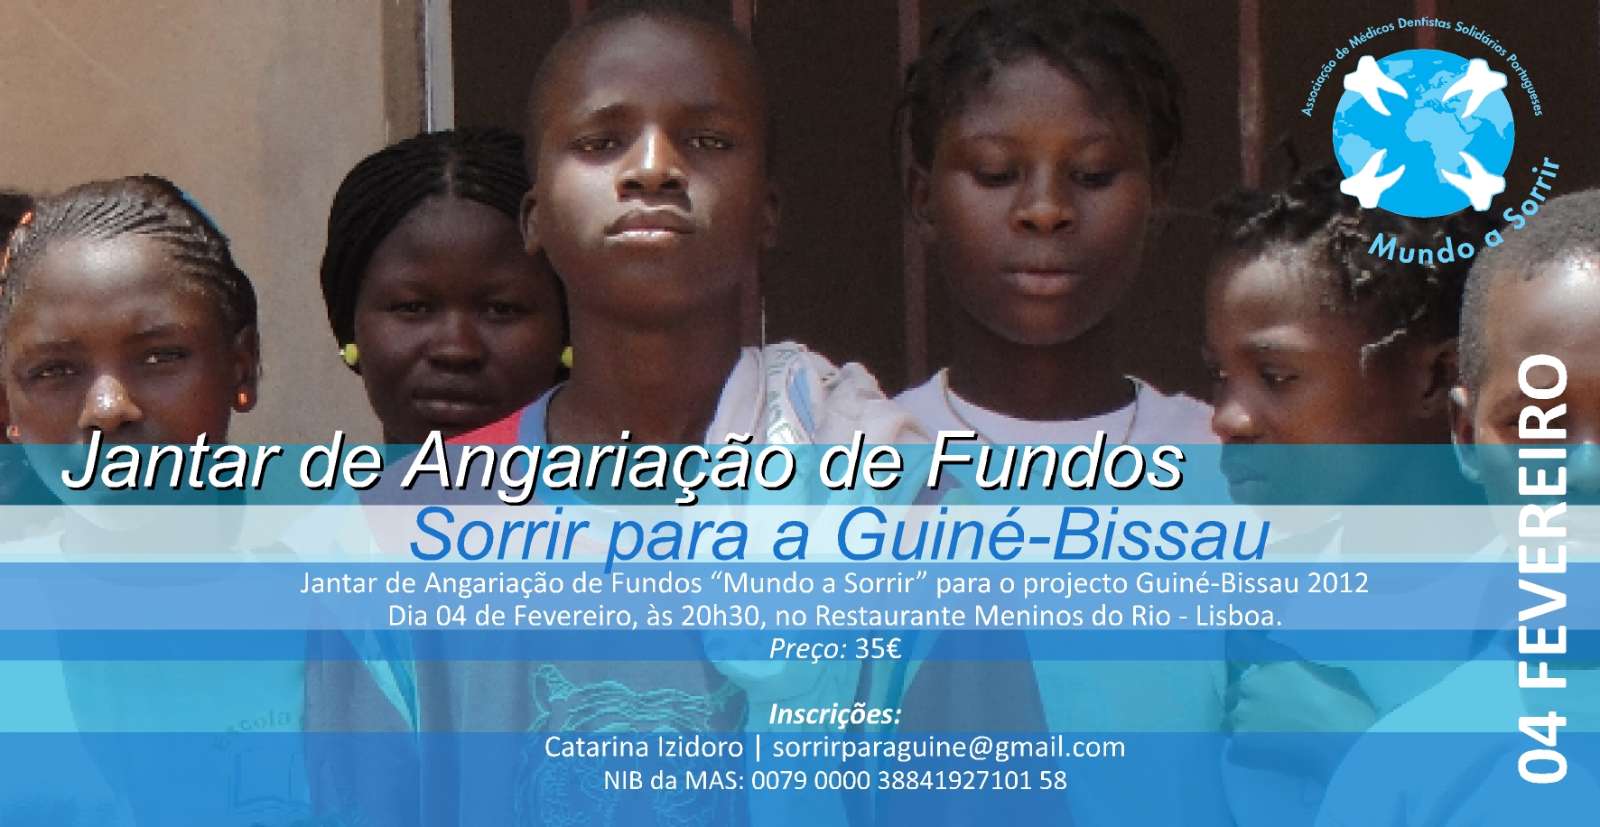 Convite - Sorrir para a Guiné-Bissau